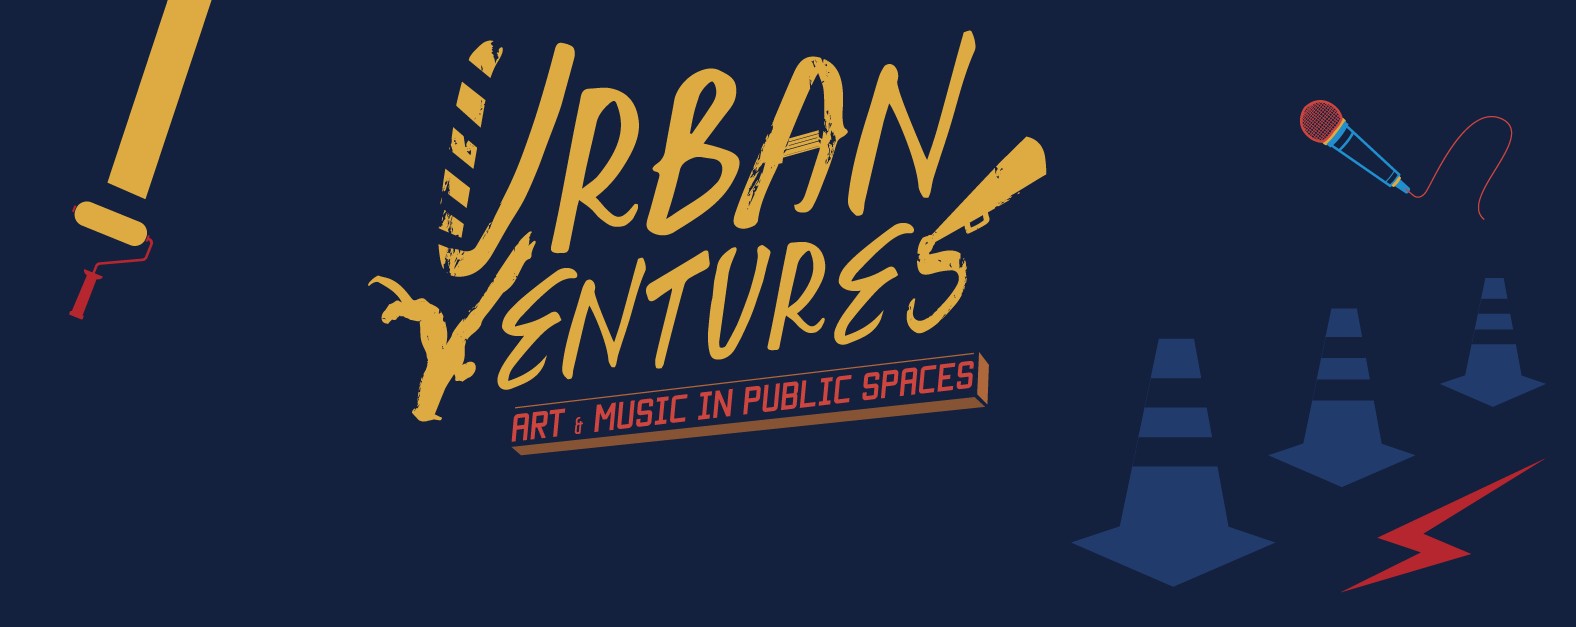 Urban Ventures